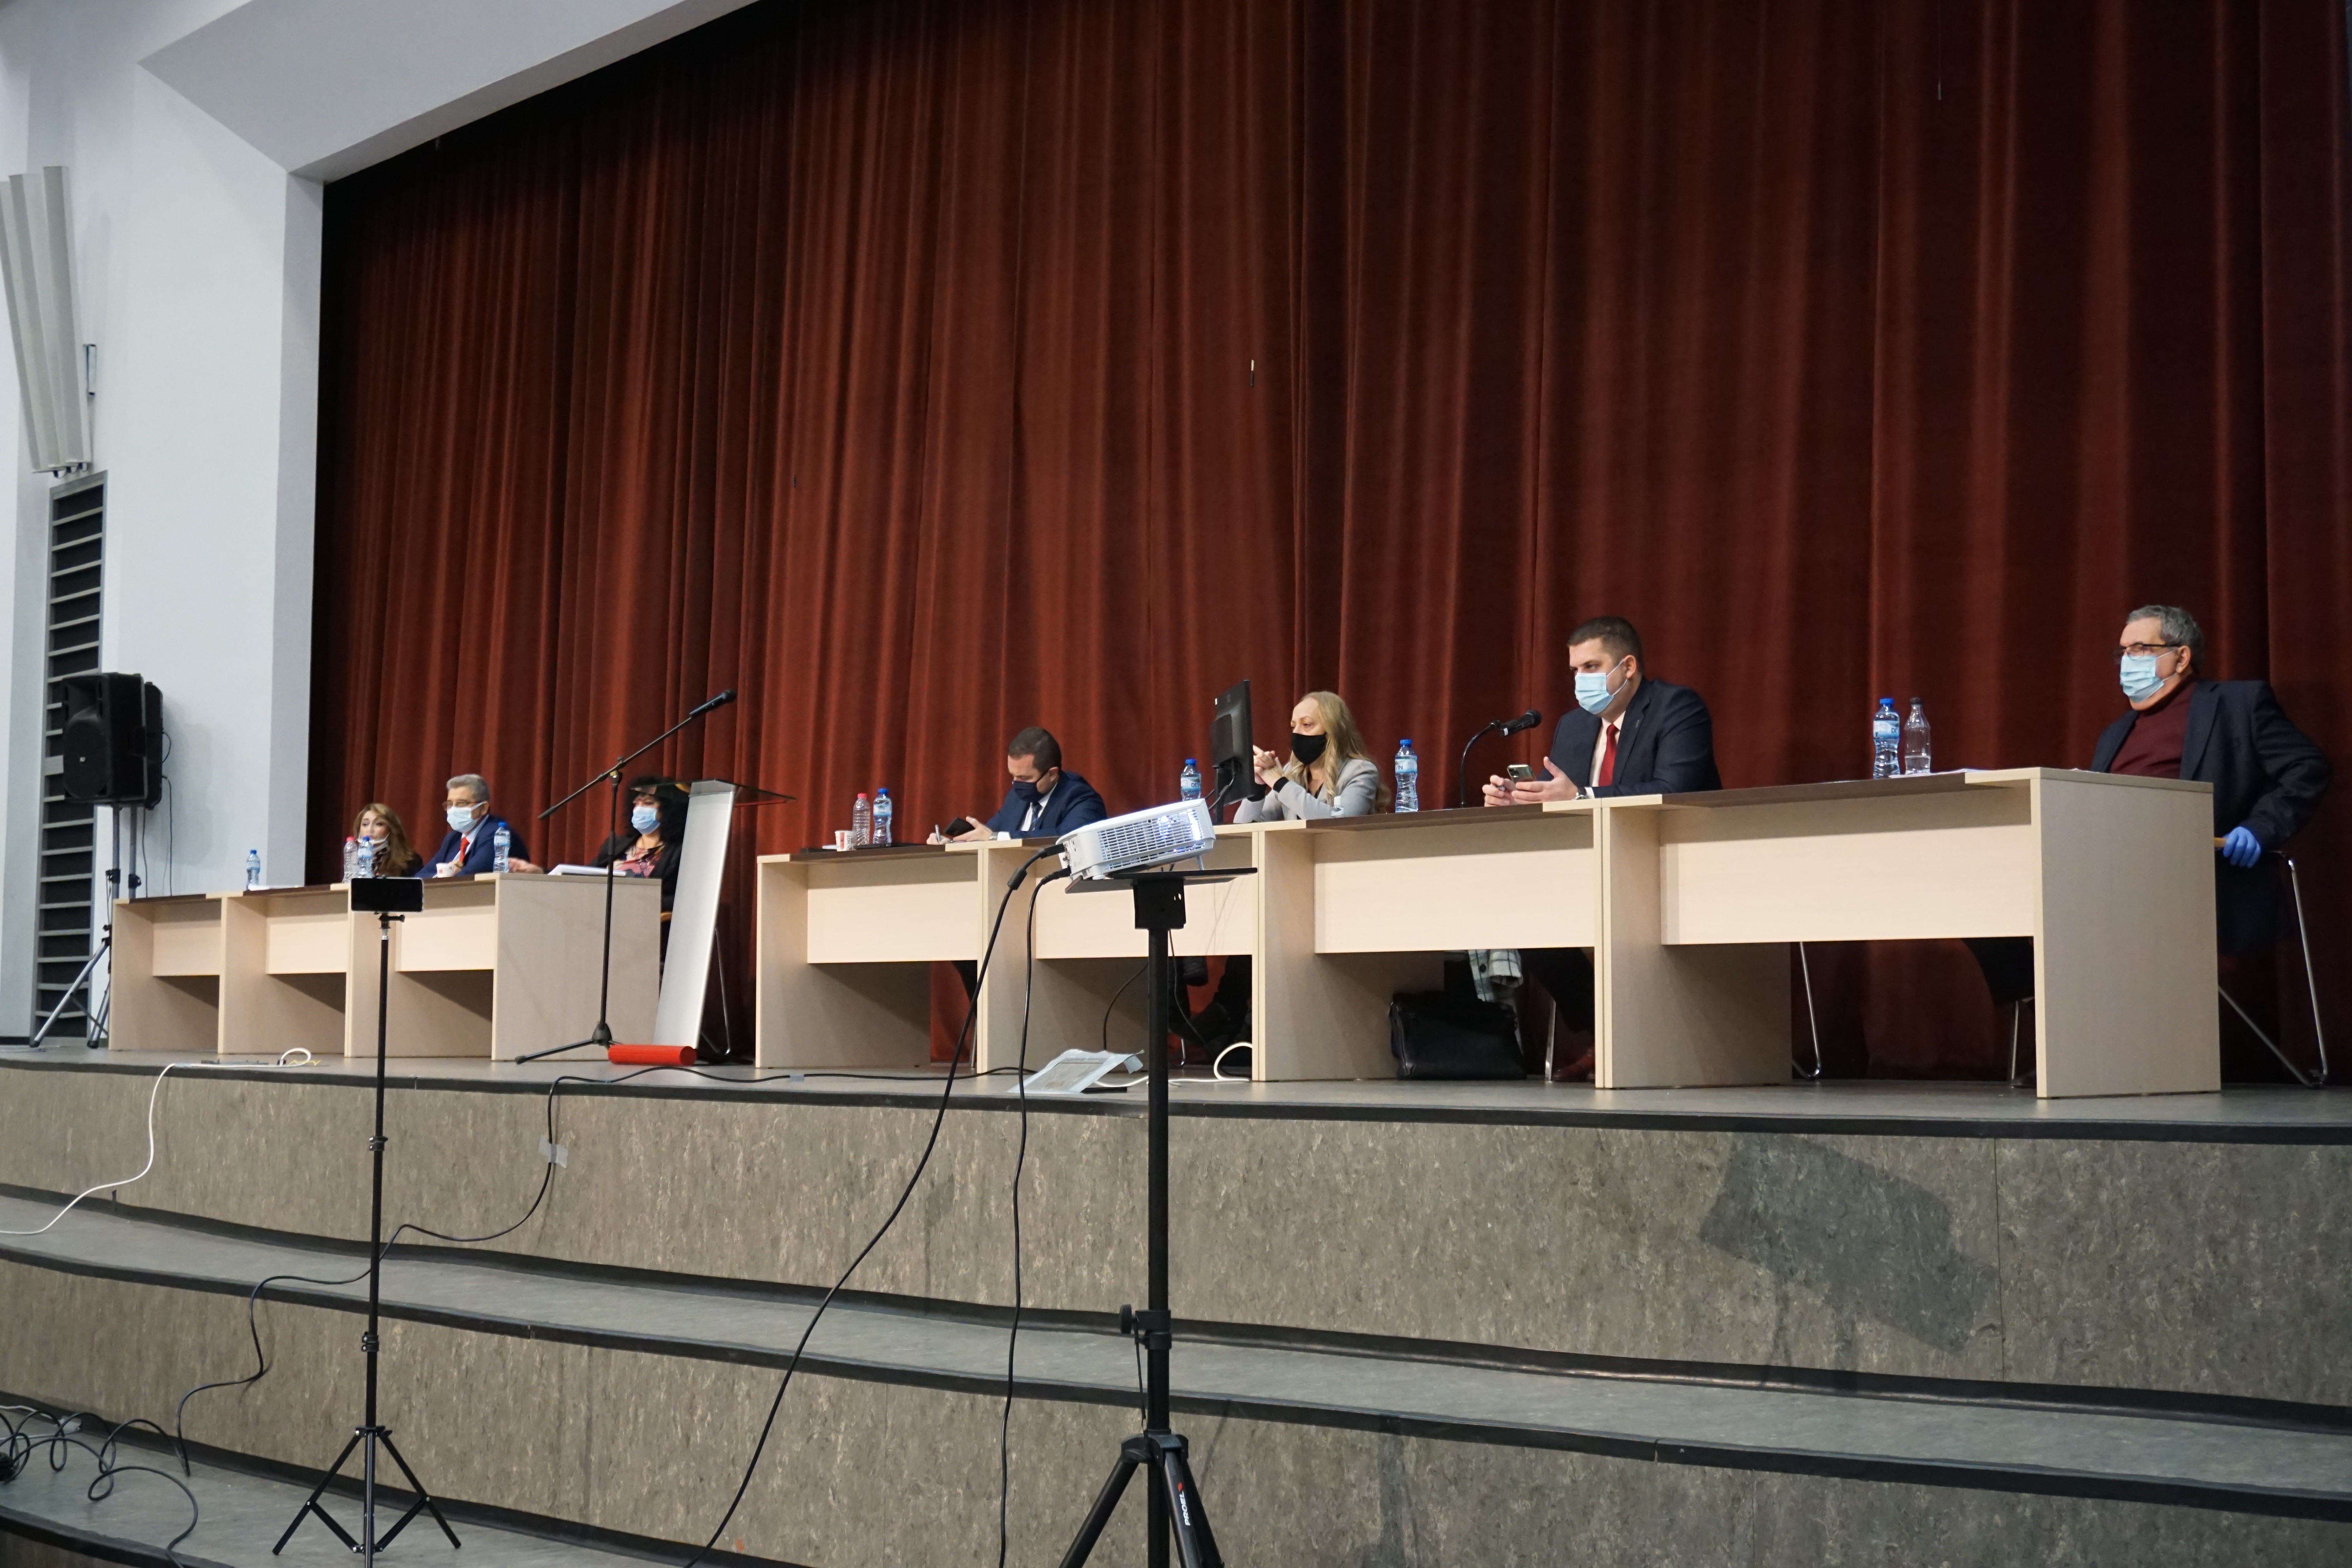 Община Русе ще прекрати договора си с „Топлофикация Русе“ ЕАД след решение на Общинския съвет